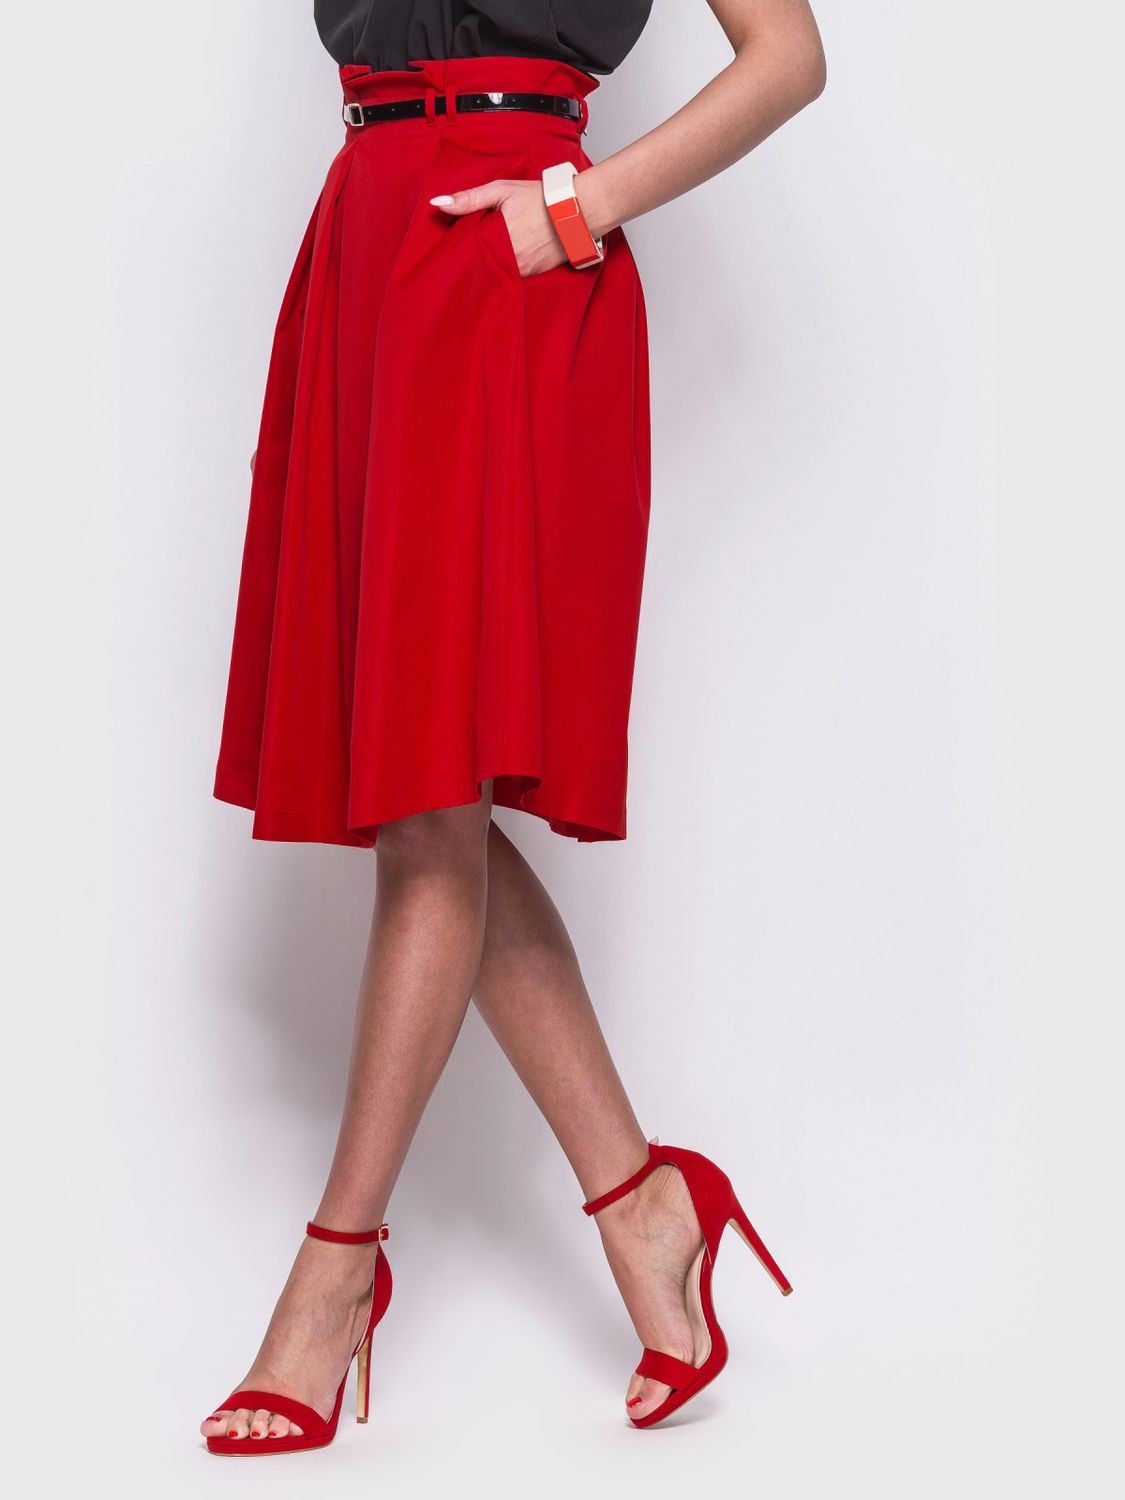 Стильная юбка с высокой посадкой красного цвета - фото